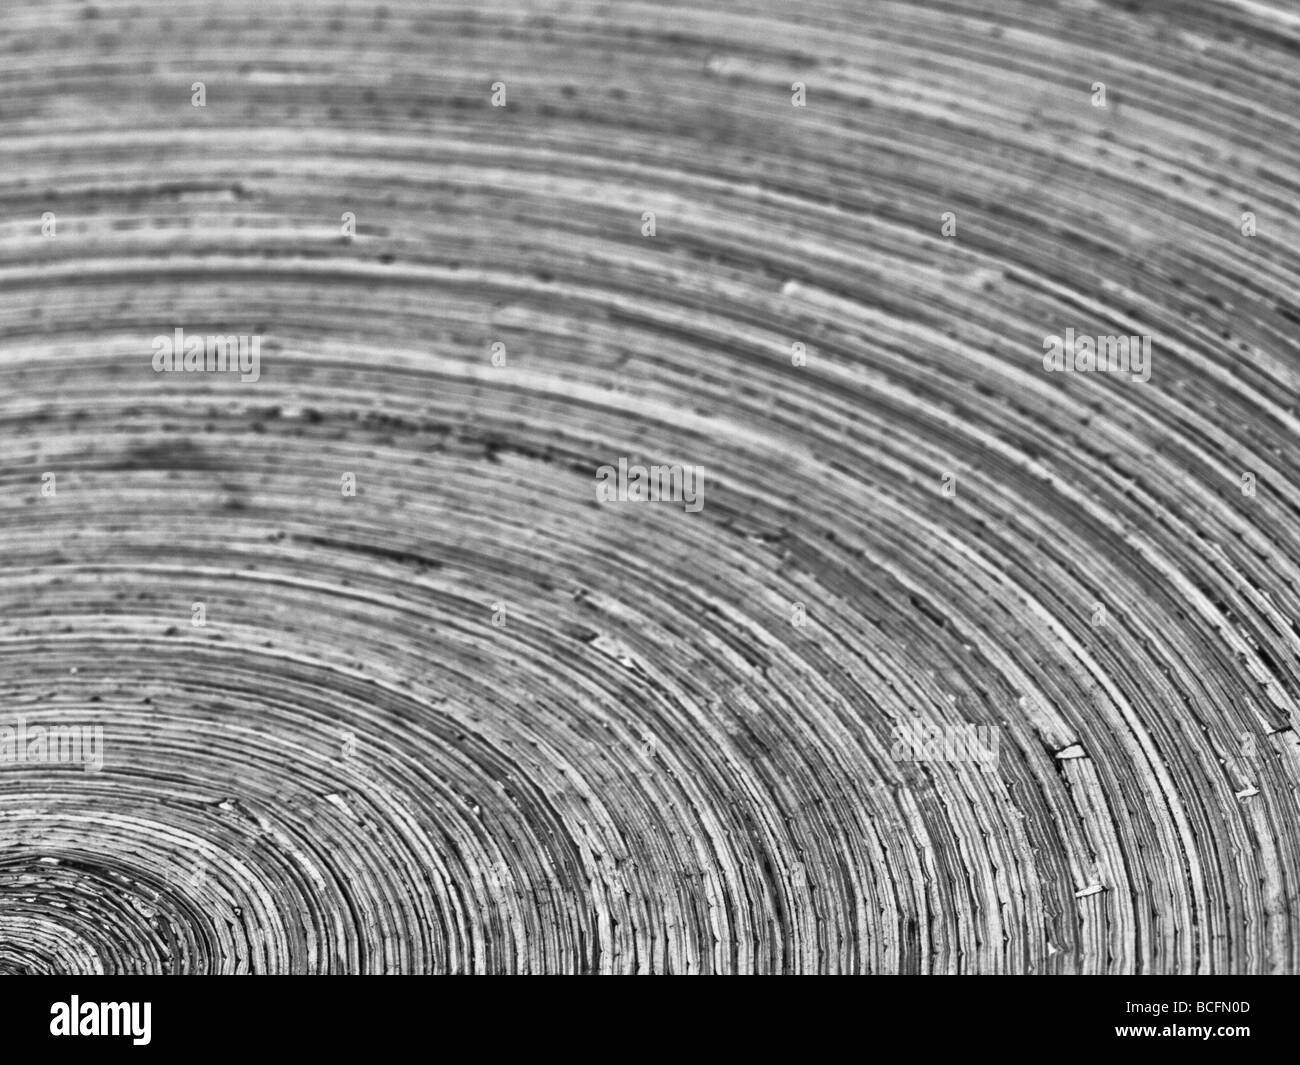 Ein Detail von einem Obst Schüssel Weizenstroh wovens Stockfotografie -  Alamy